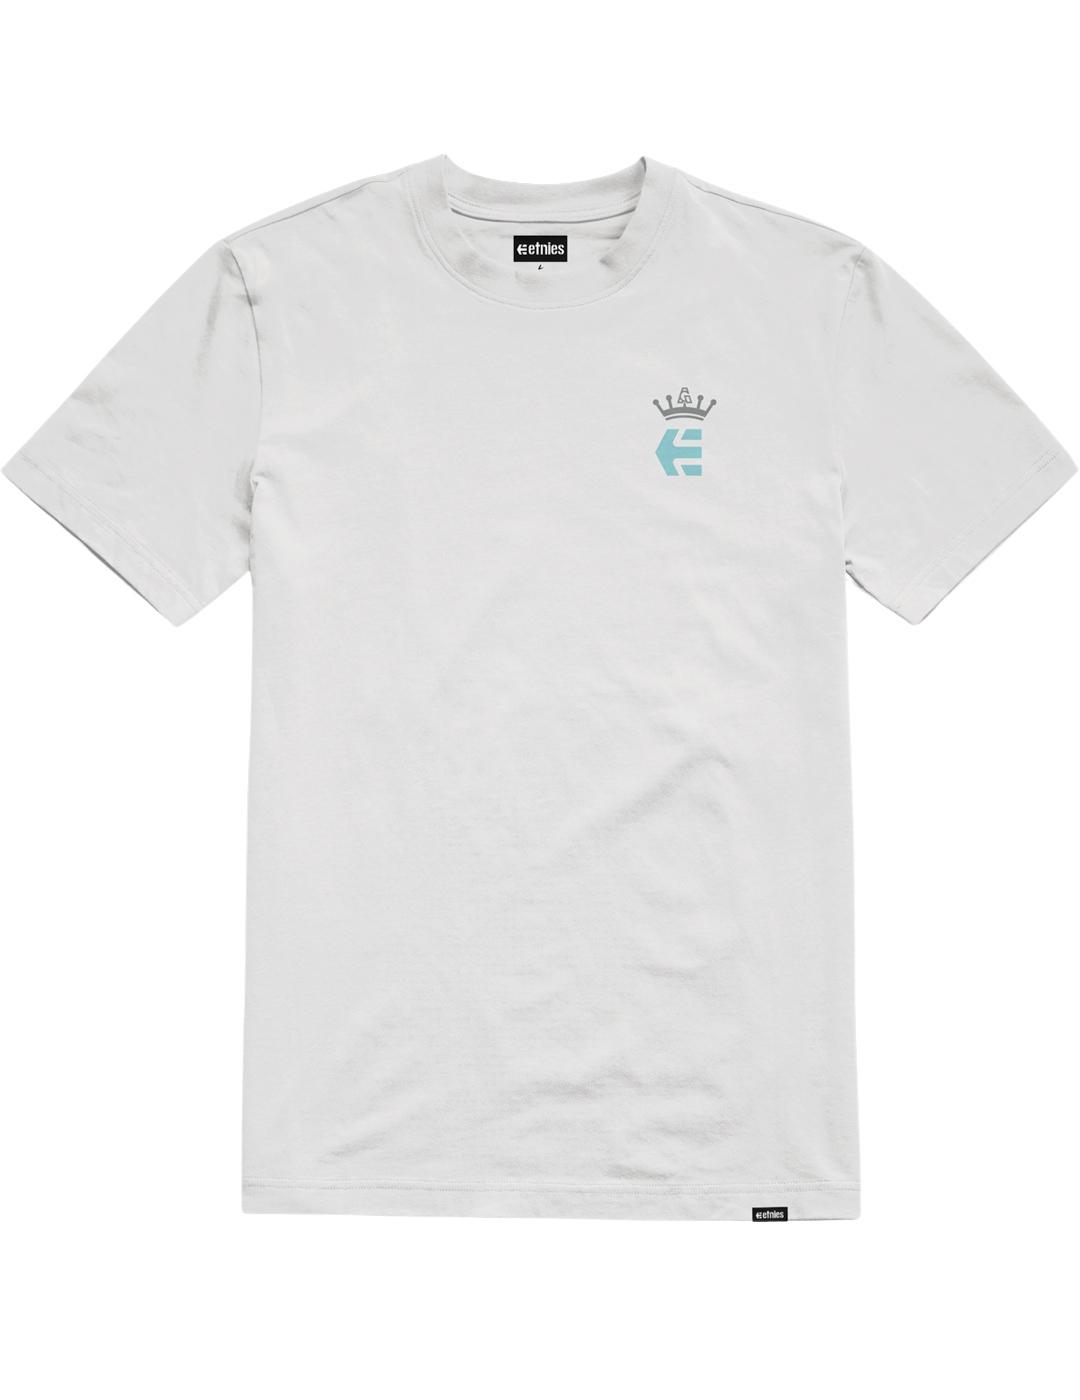 Camiseta ETNIES AG - White/Powder